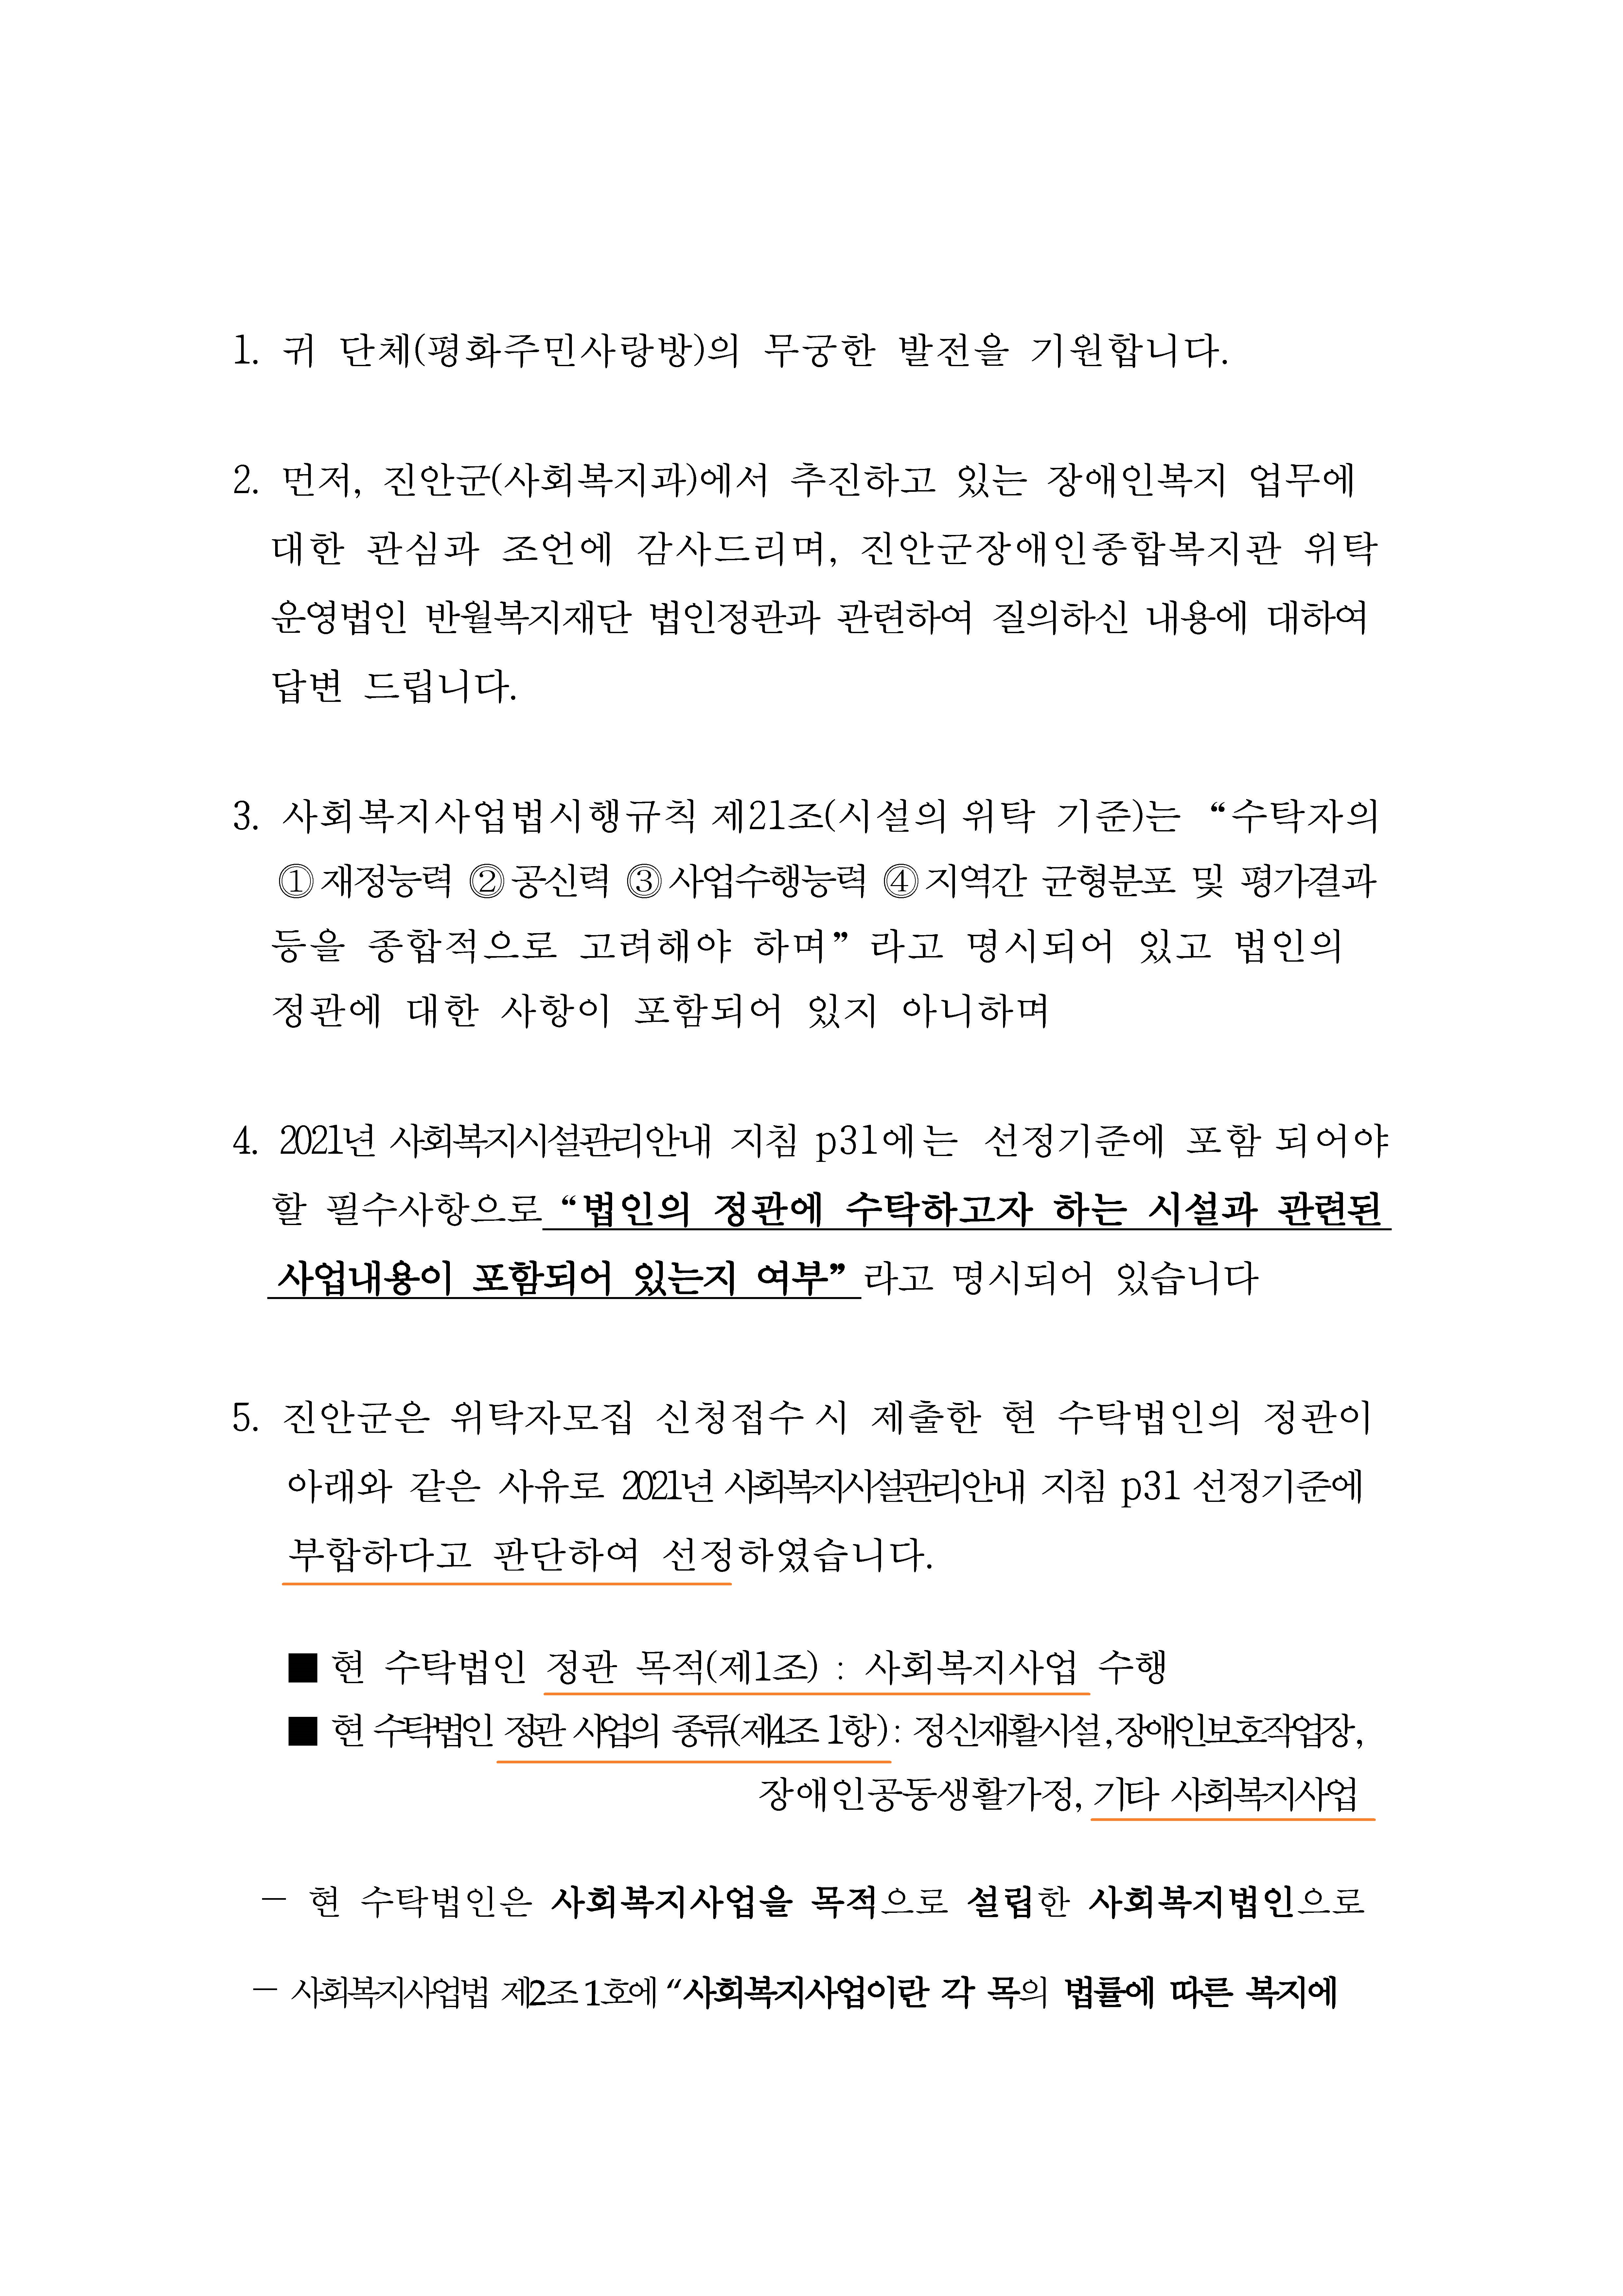 진안군 사회복지과-31974(2021.12.16)호_민원 처리결과 안내(붙임-답변서 1부)_페이지_2.jpg